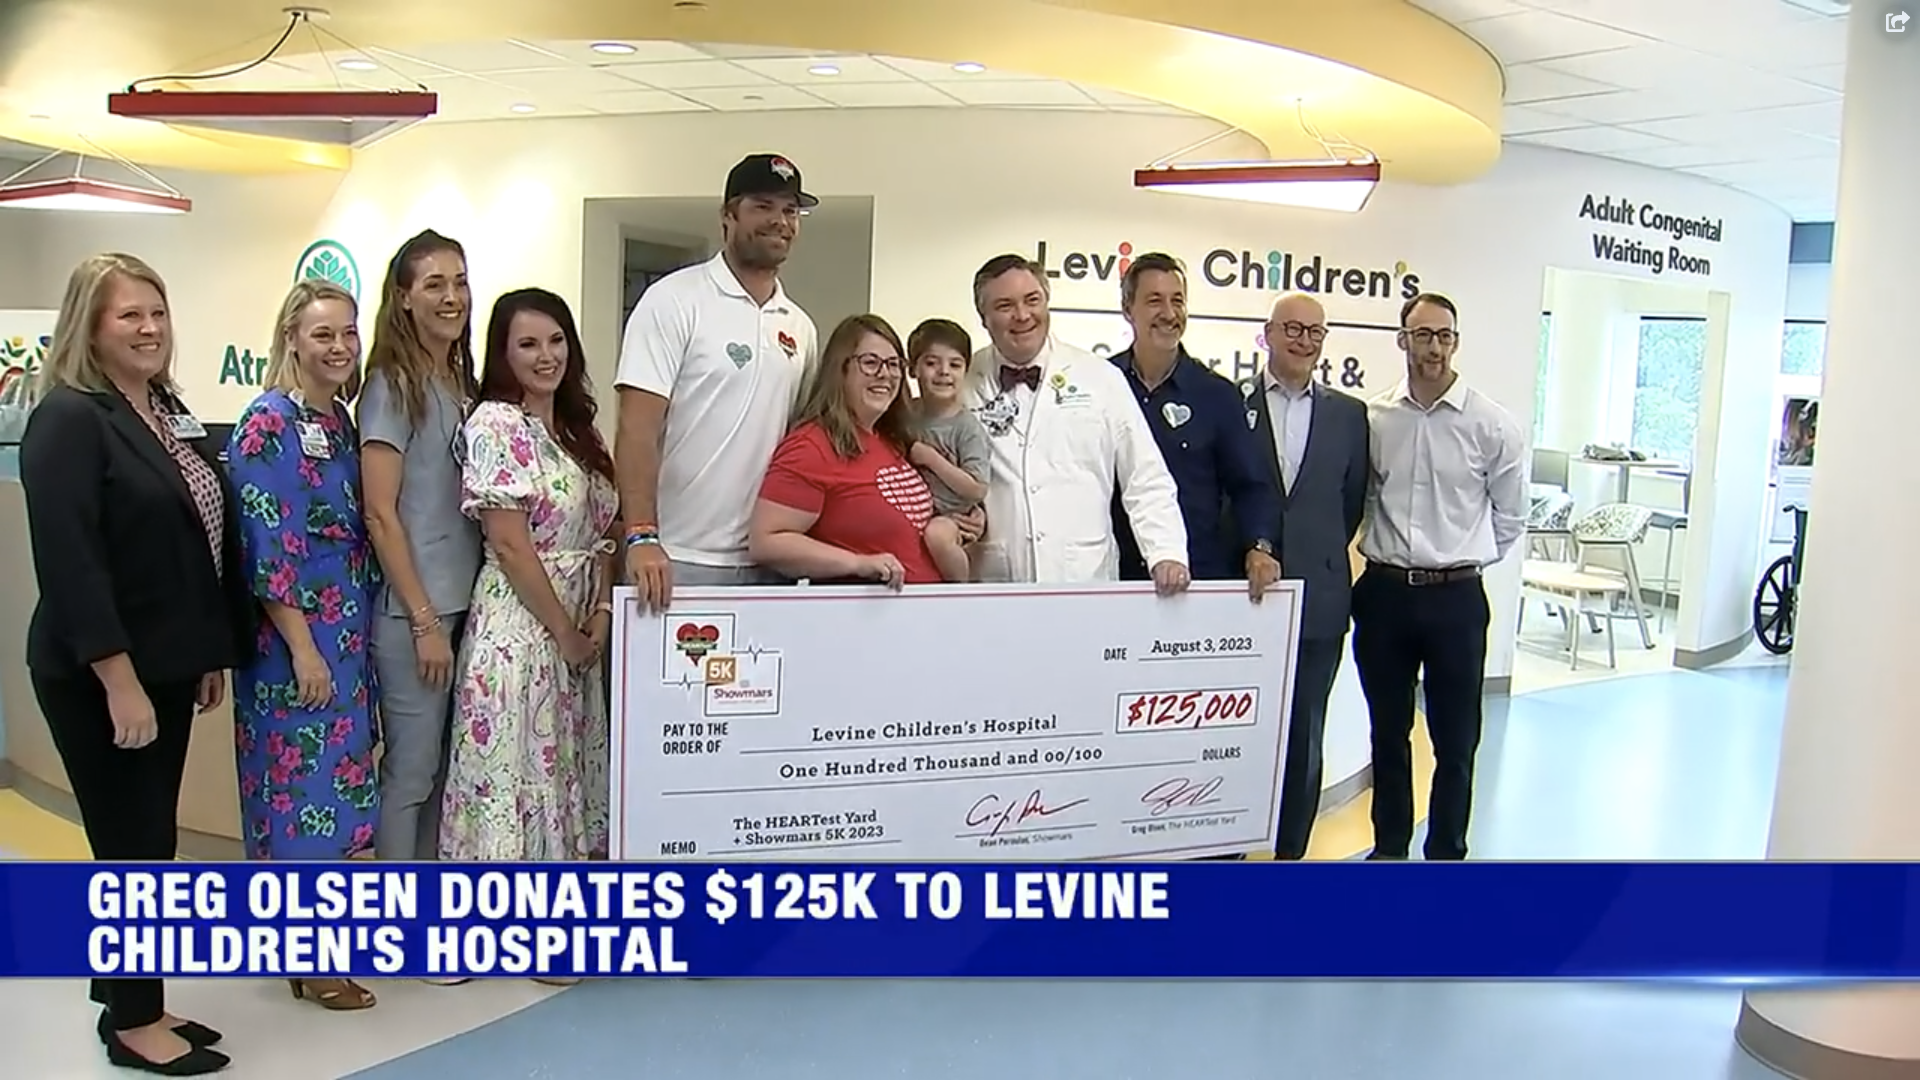 Greg Olsen donates $125K to Levine Children’s HEARTest Yard Program